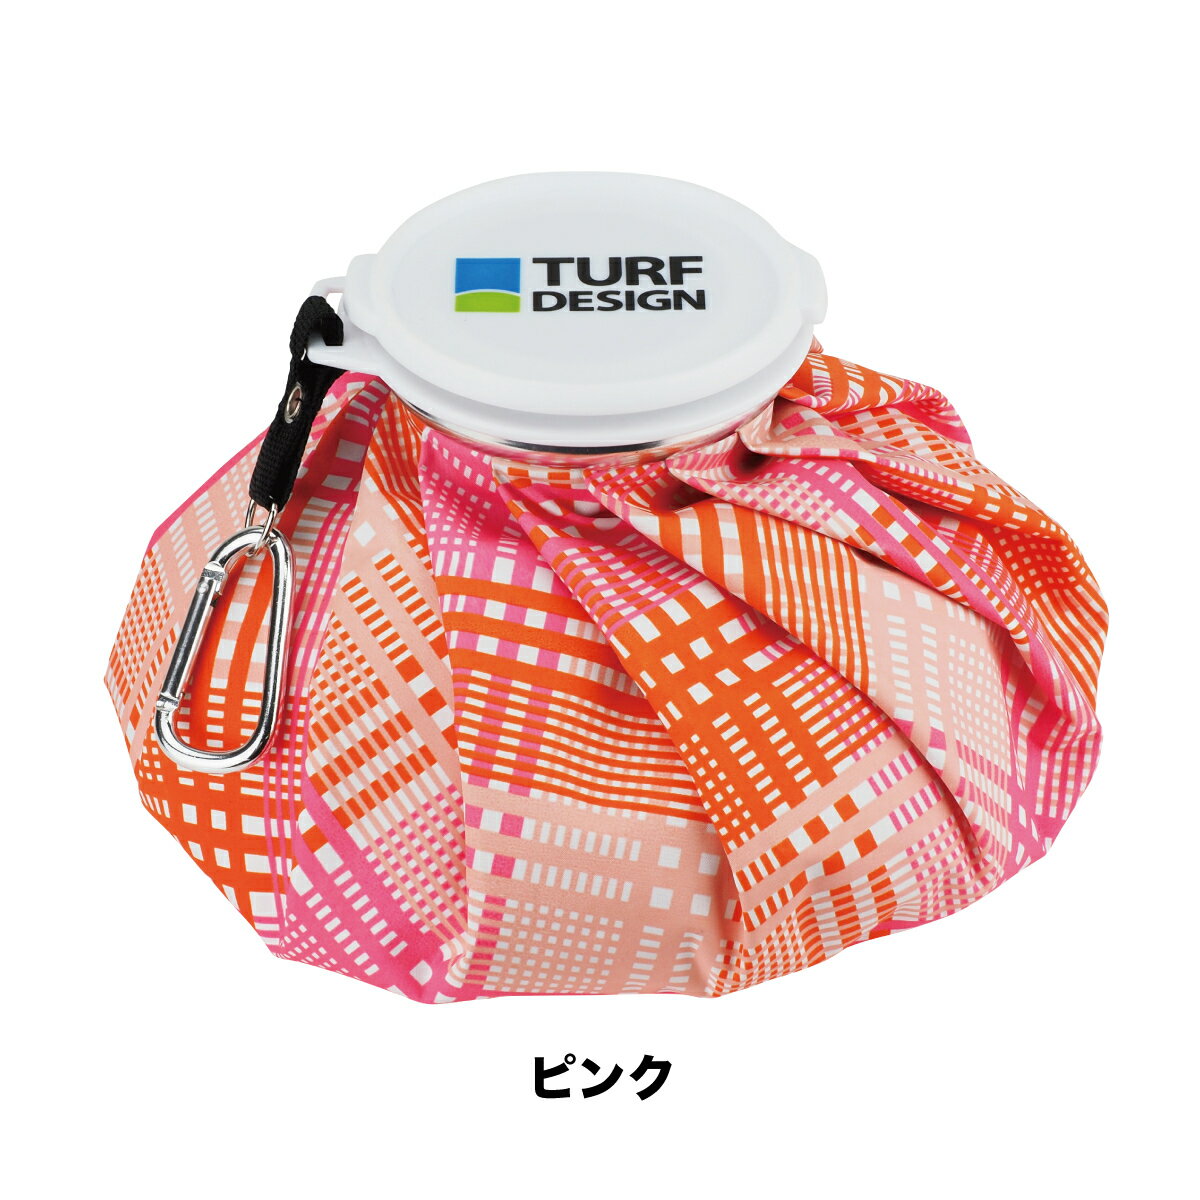 TURF DESIGN ターフデザインICE BAG アイスバッグ 氷嚢 カラビナ付きTDIB-2272L